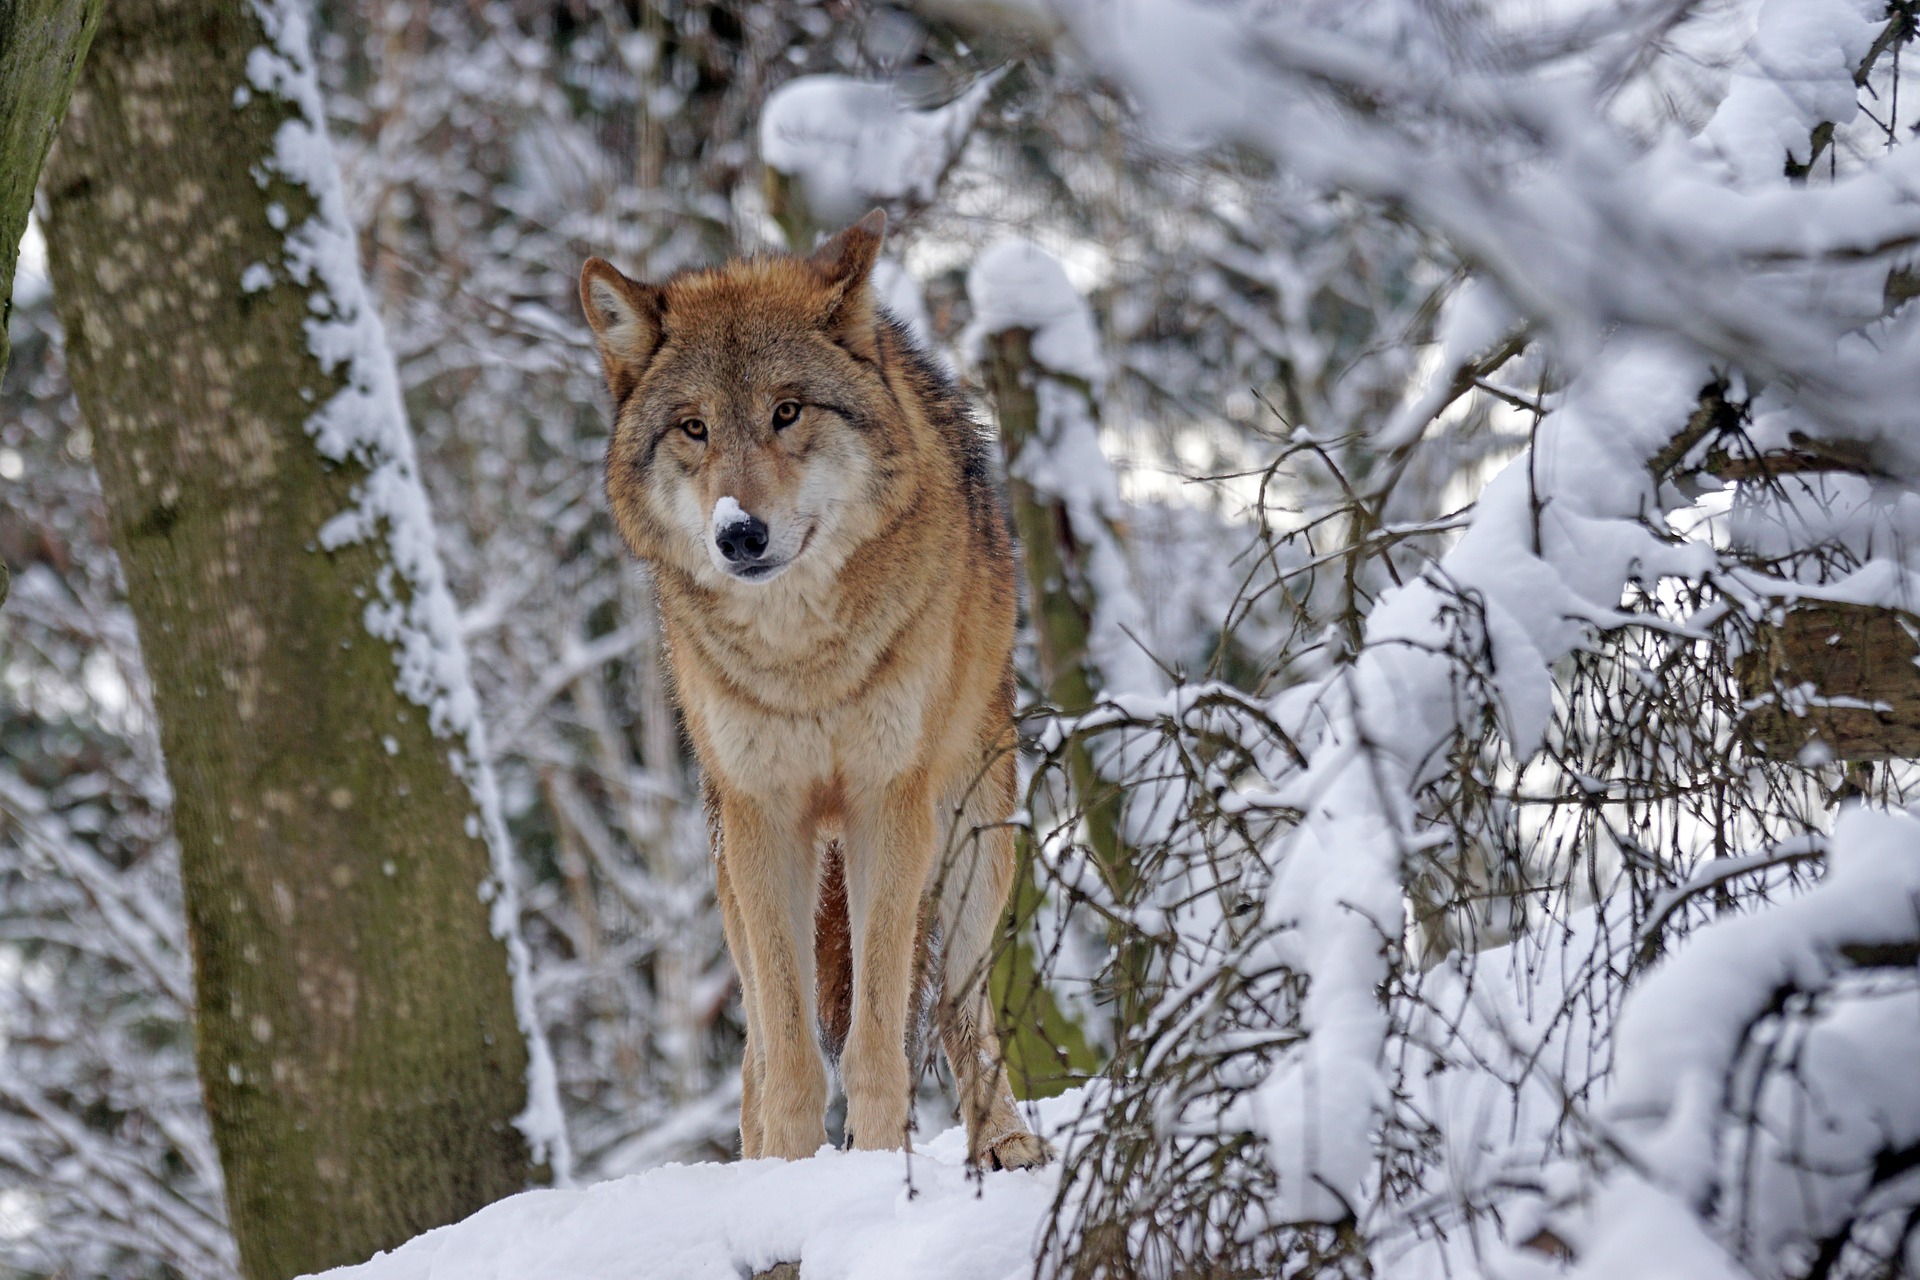 Radni z gminy Dzikowiec mówią o wilkach, które zaczęły pojawiać się w Osiej Górze i Dzikowcu - Zdjęcie główne